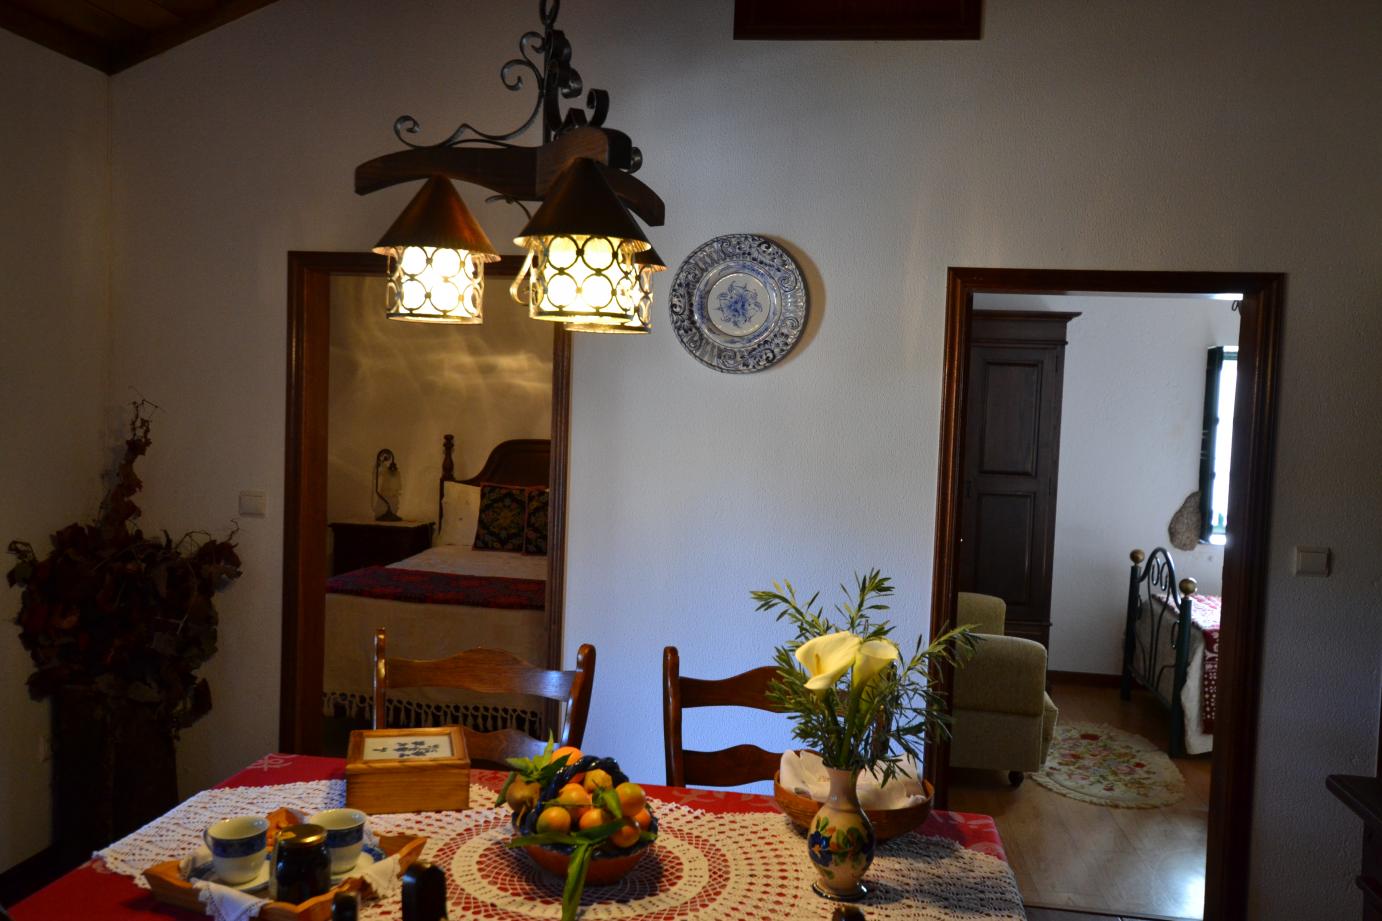 Casa de Pereiró - Turismo ruarl no Soajo - Minho - PNPG